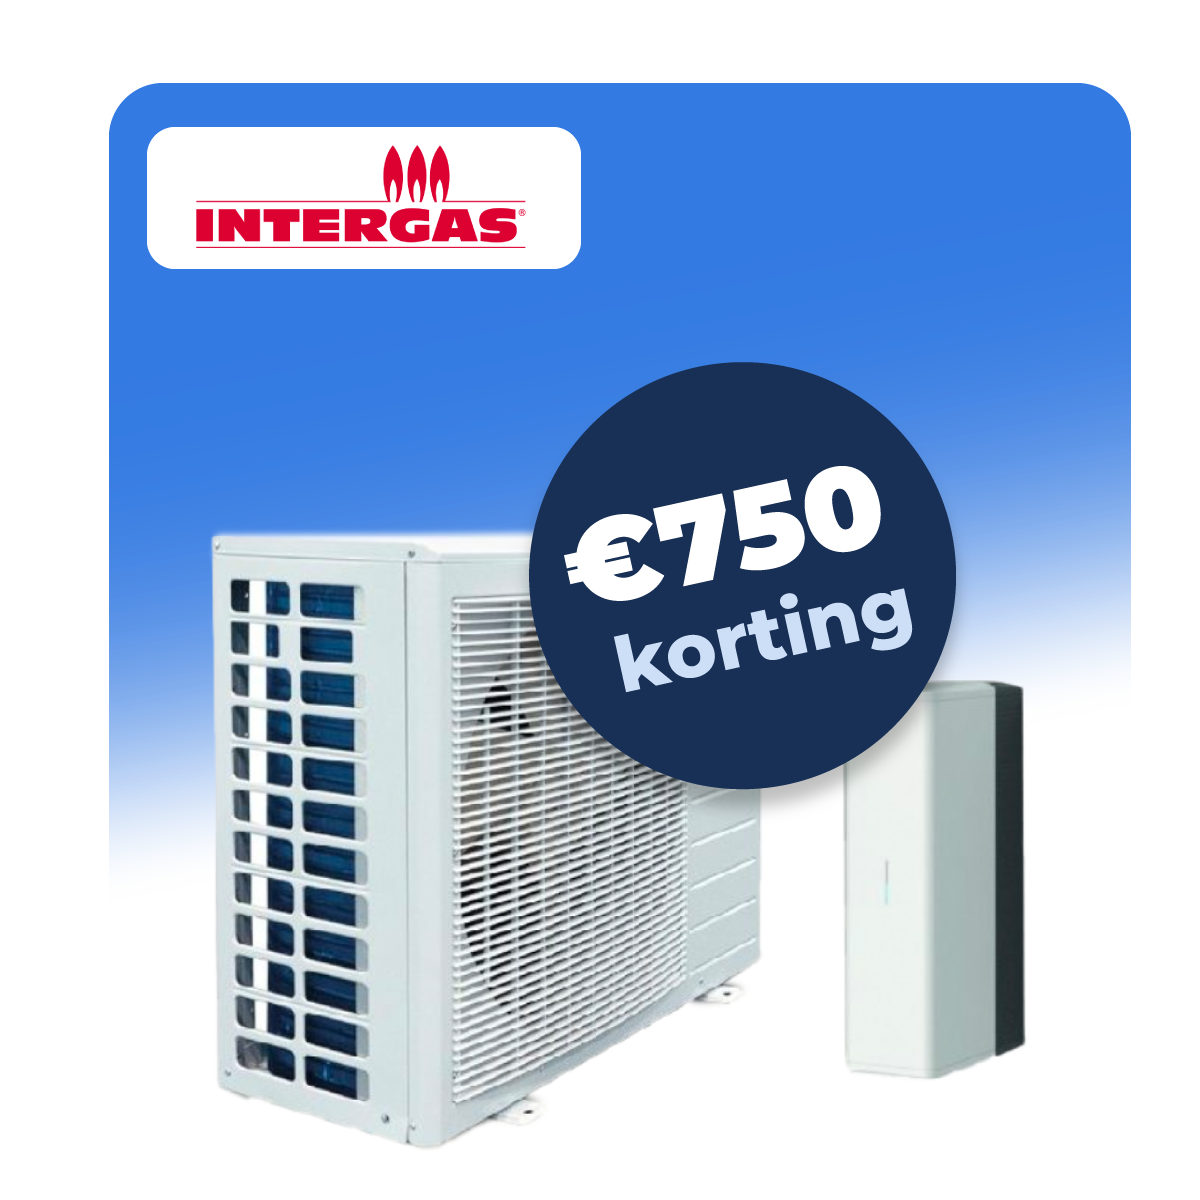 Intergas-1000korting.png